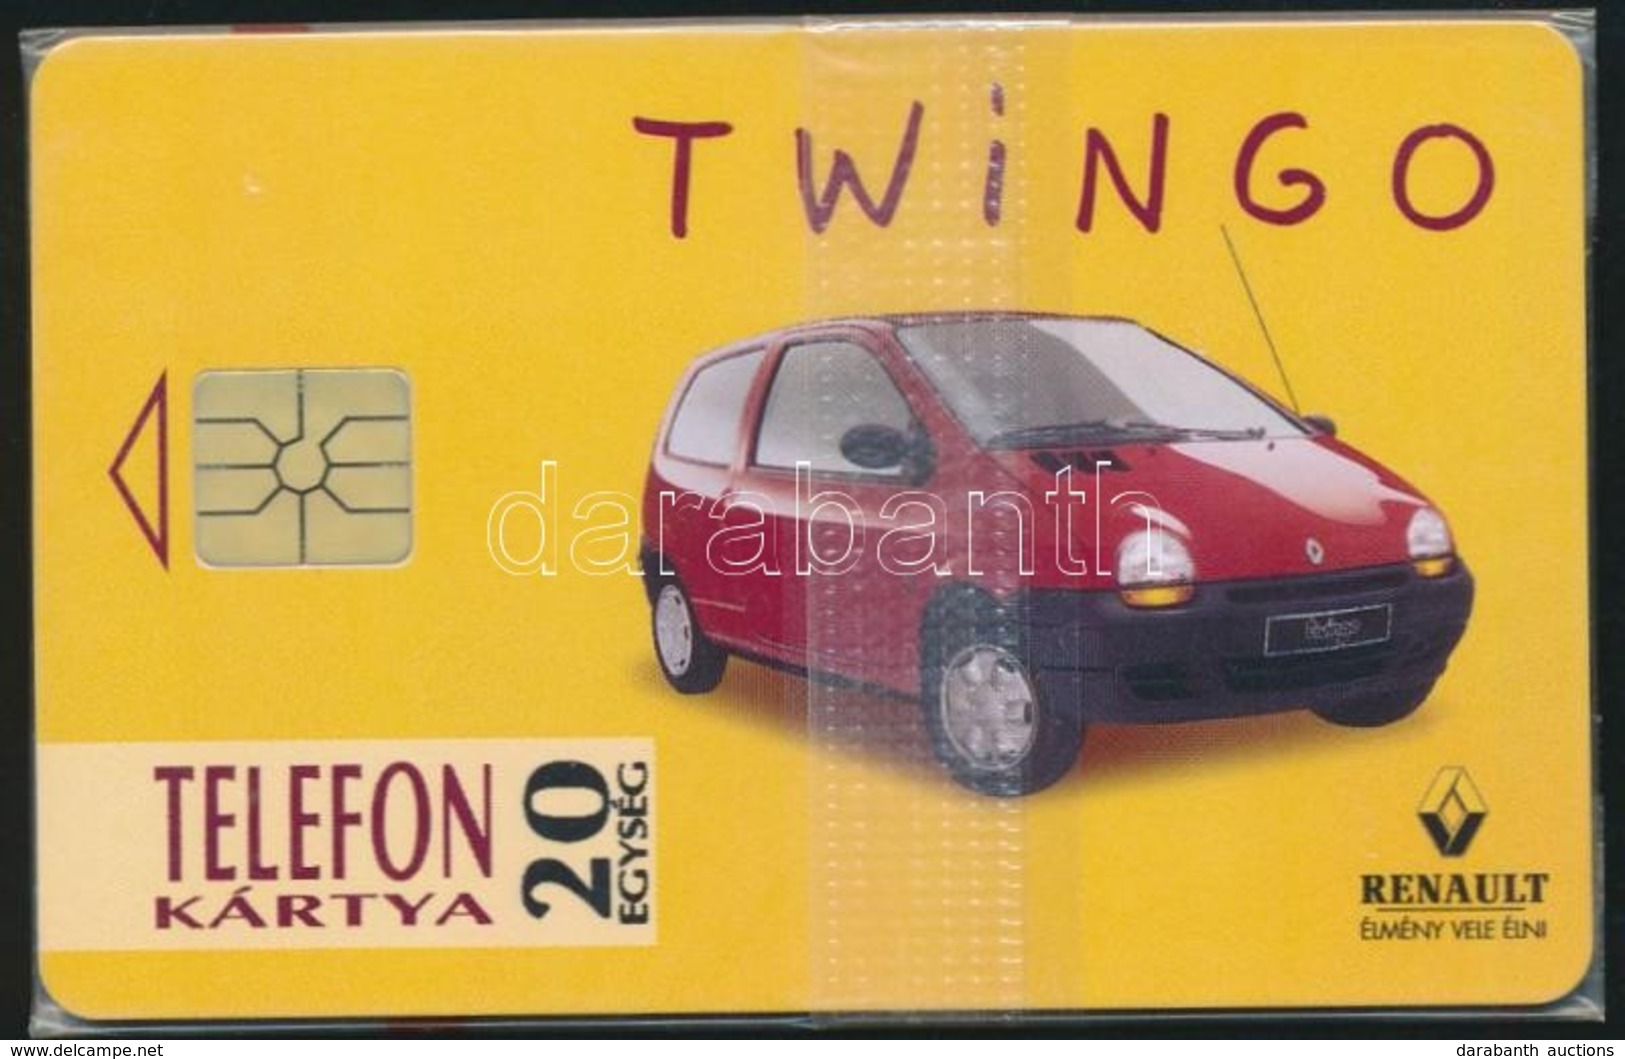 1994 Renault Twingo. Használatlan Telefonkártya, Bontatlan Csomagolásban - Non Classés